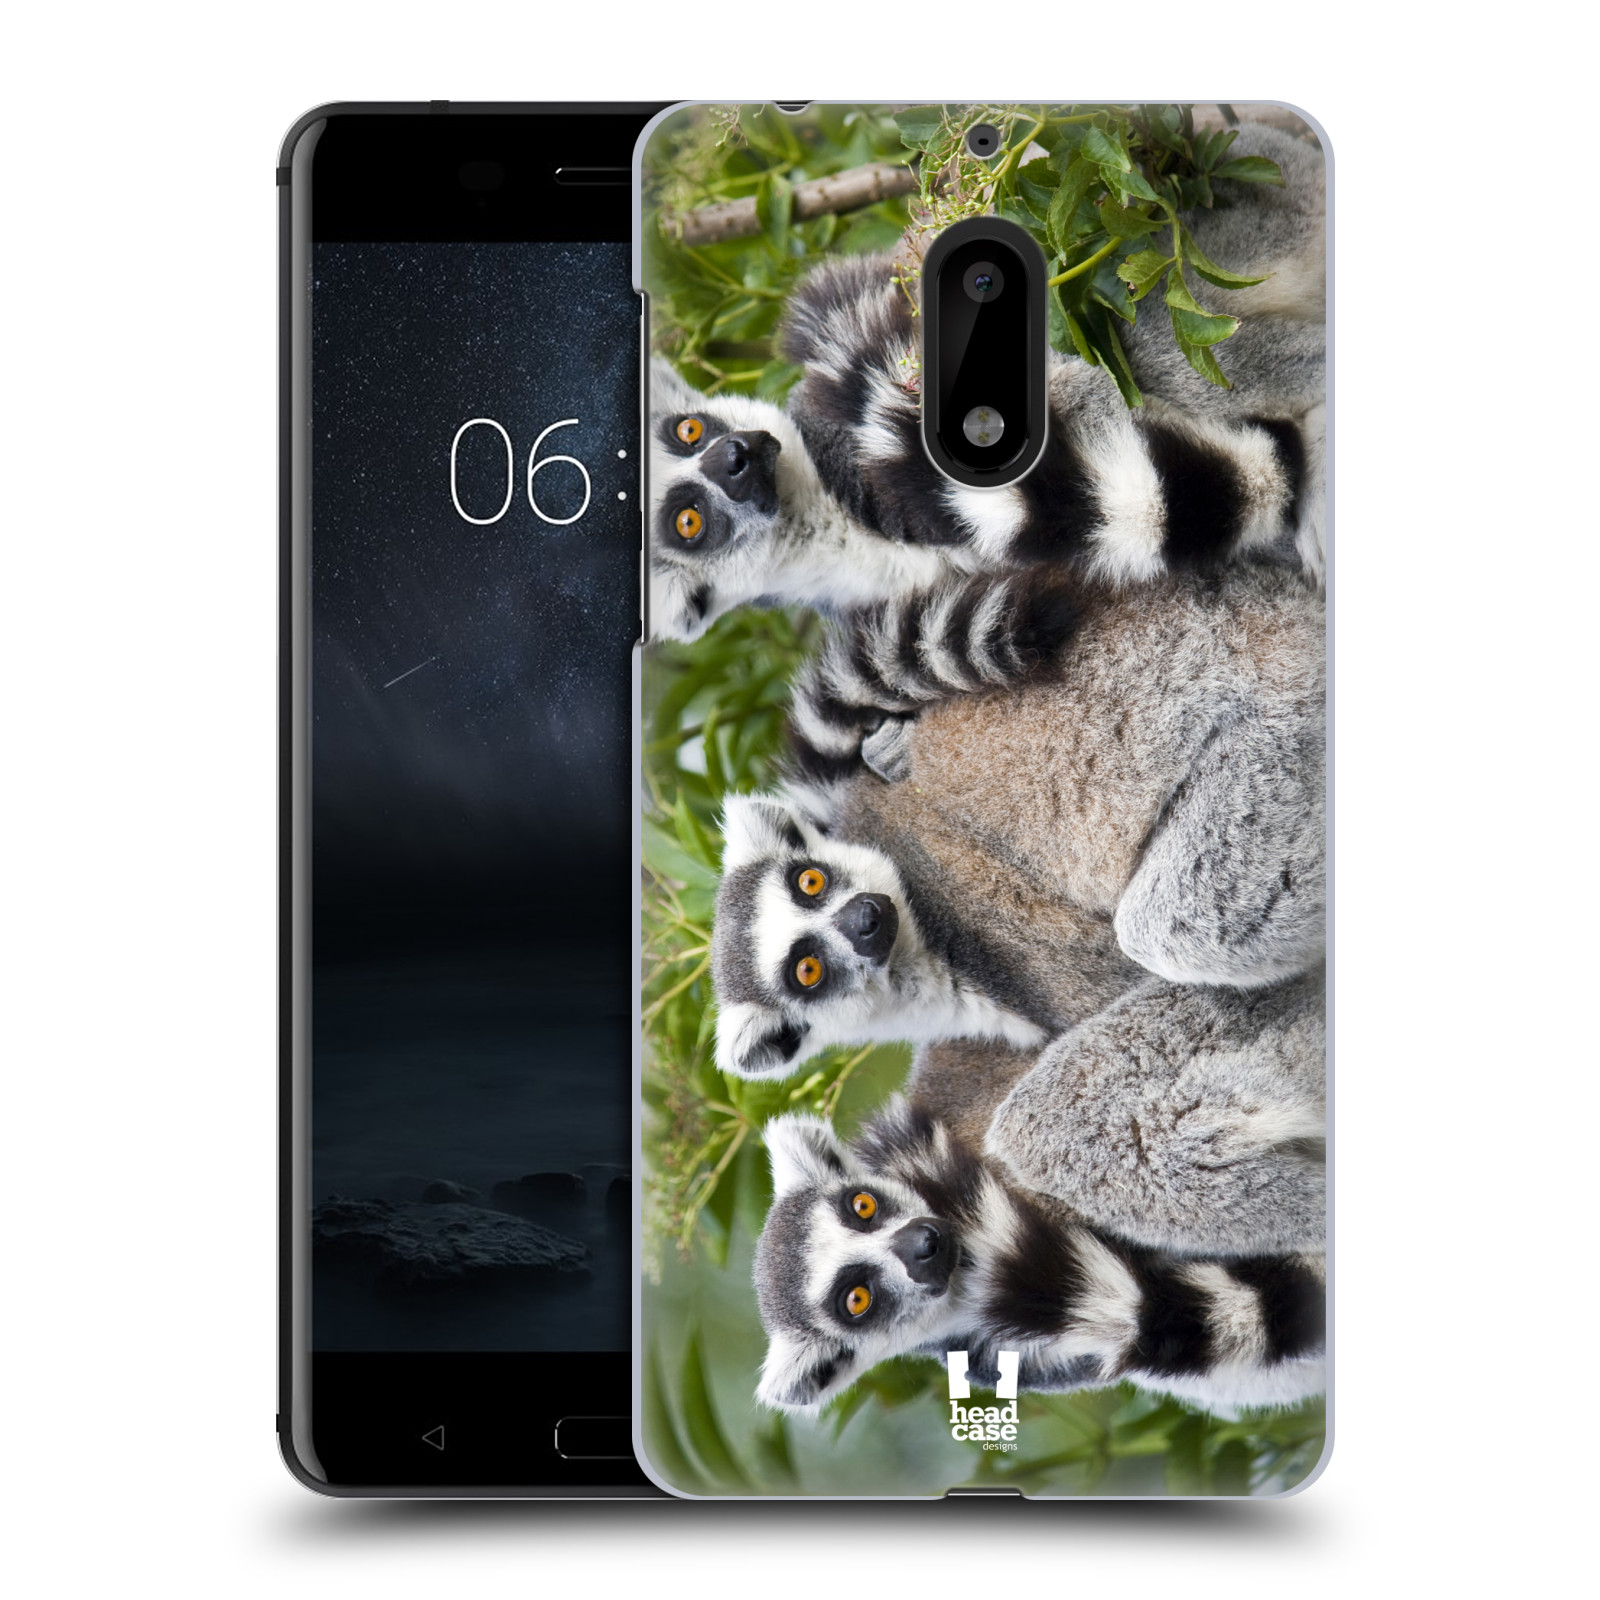 HEAD CASE plastový obal na mobil Nokia 6 vzor slavná zvířata foto lemur